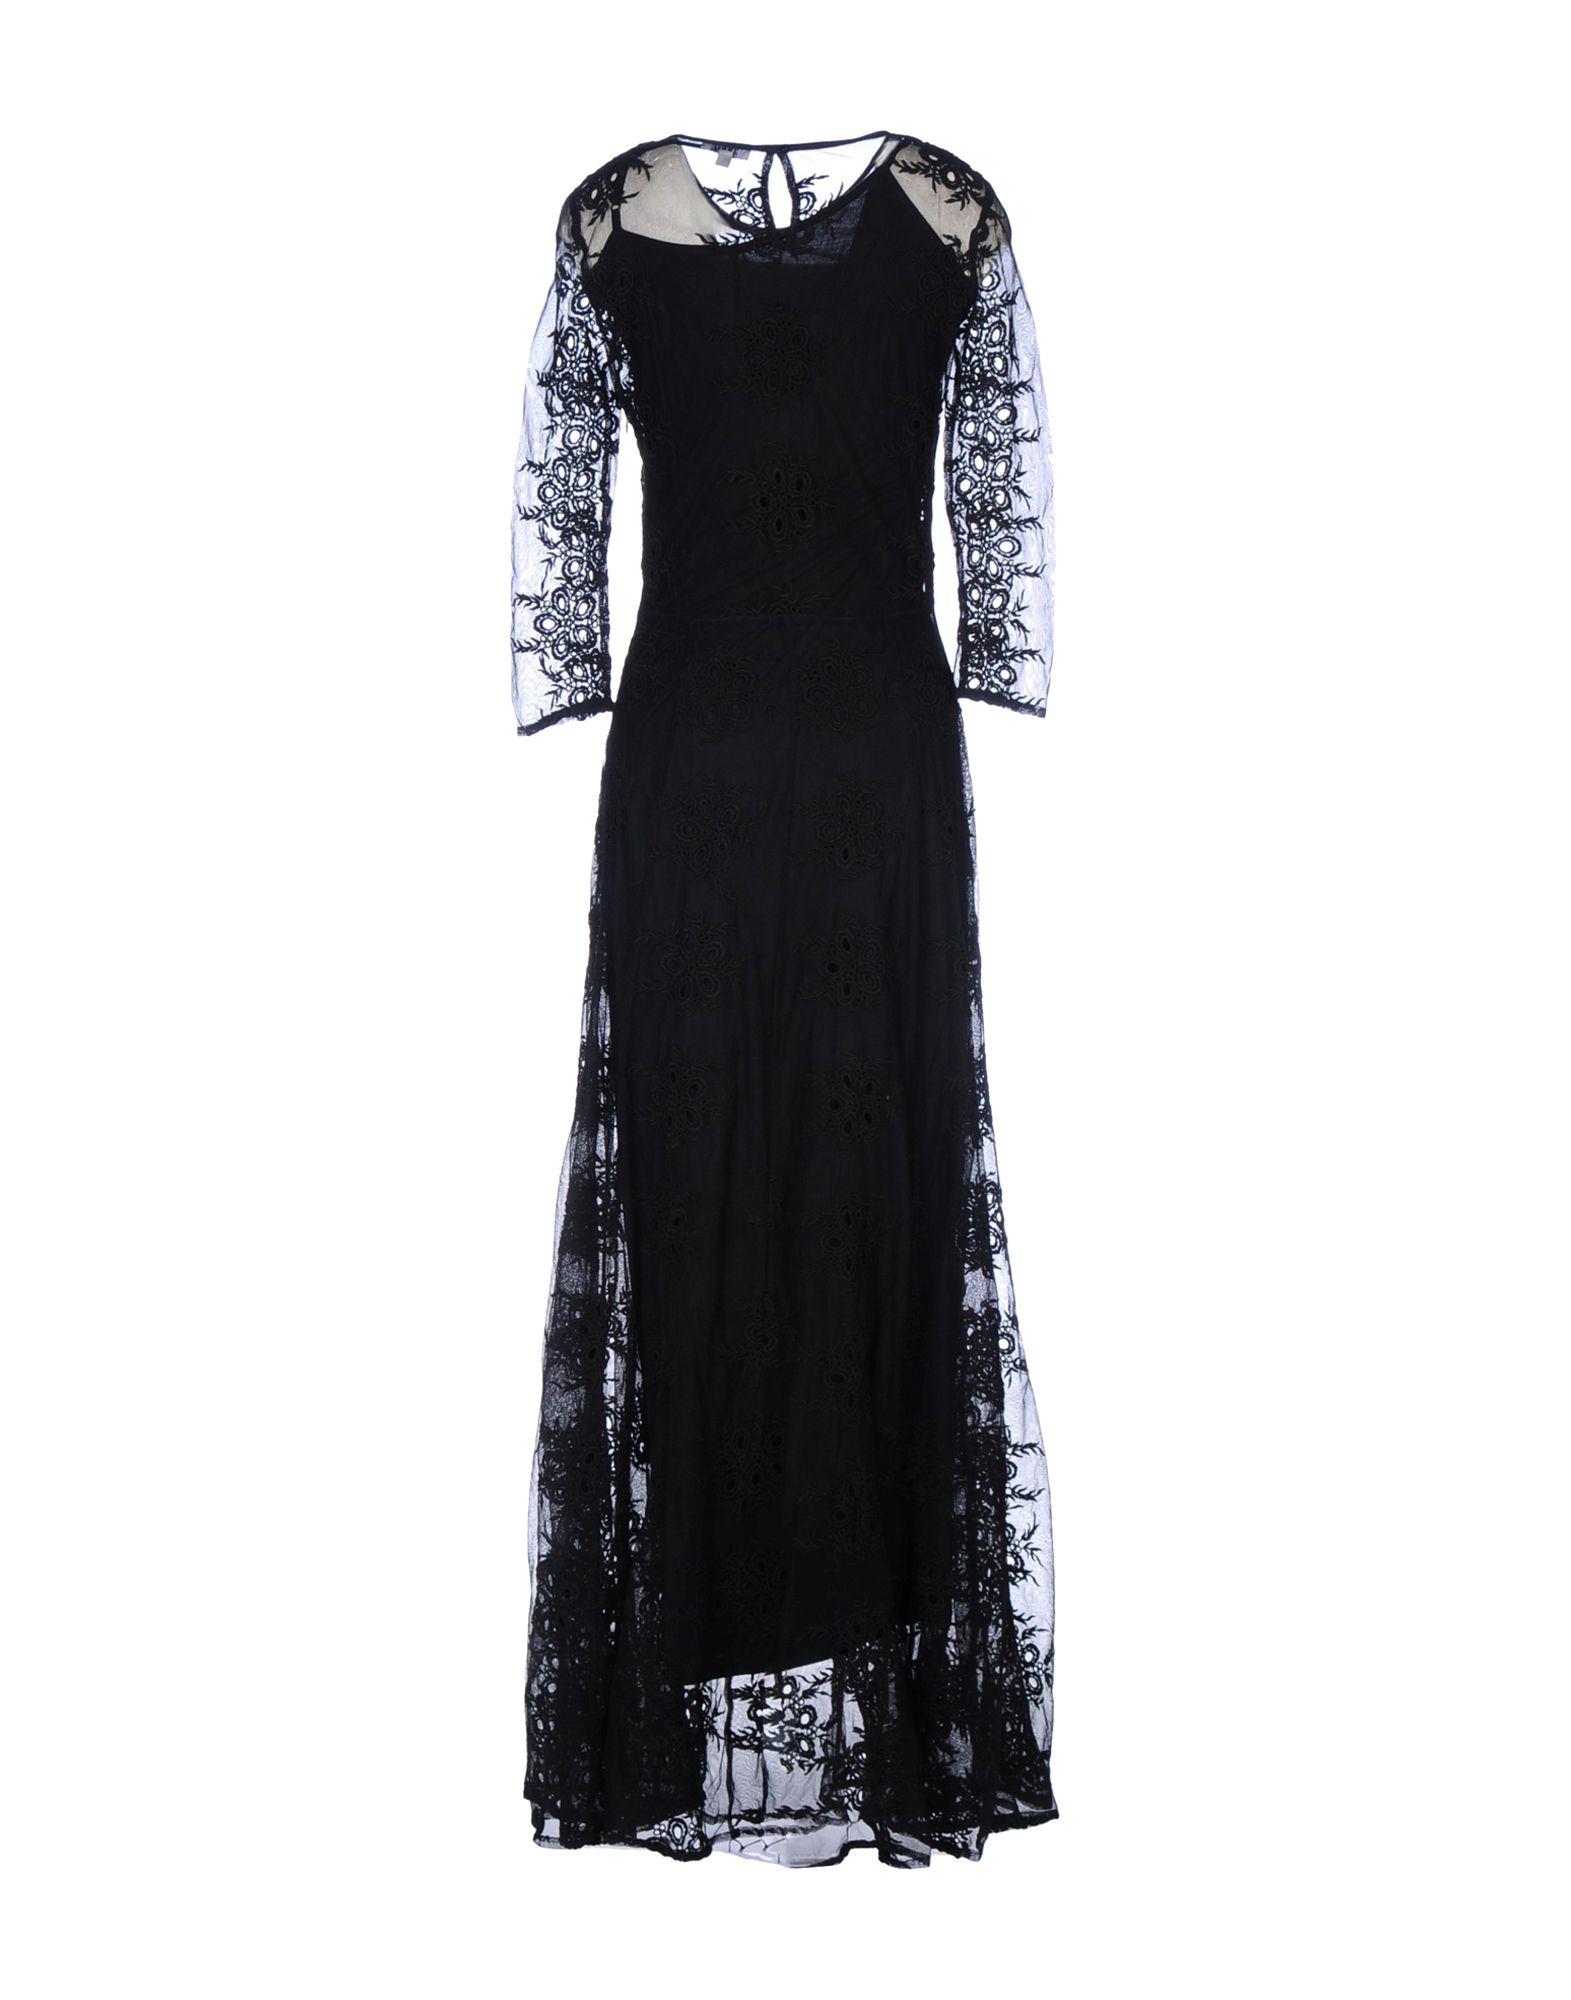 Lyst - Brigitte Bardot Long Dress in Black